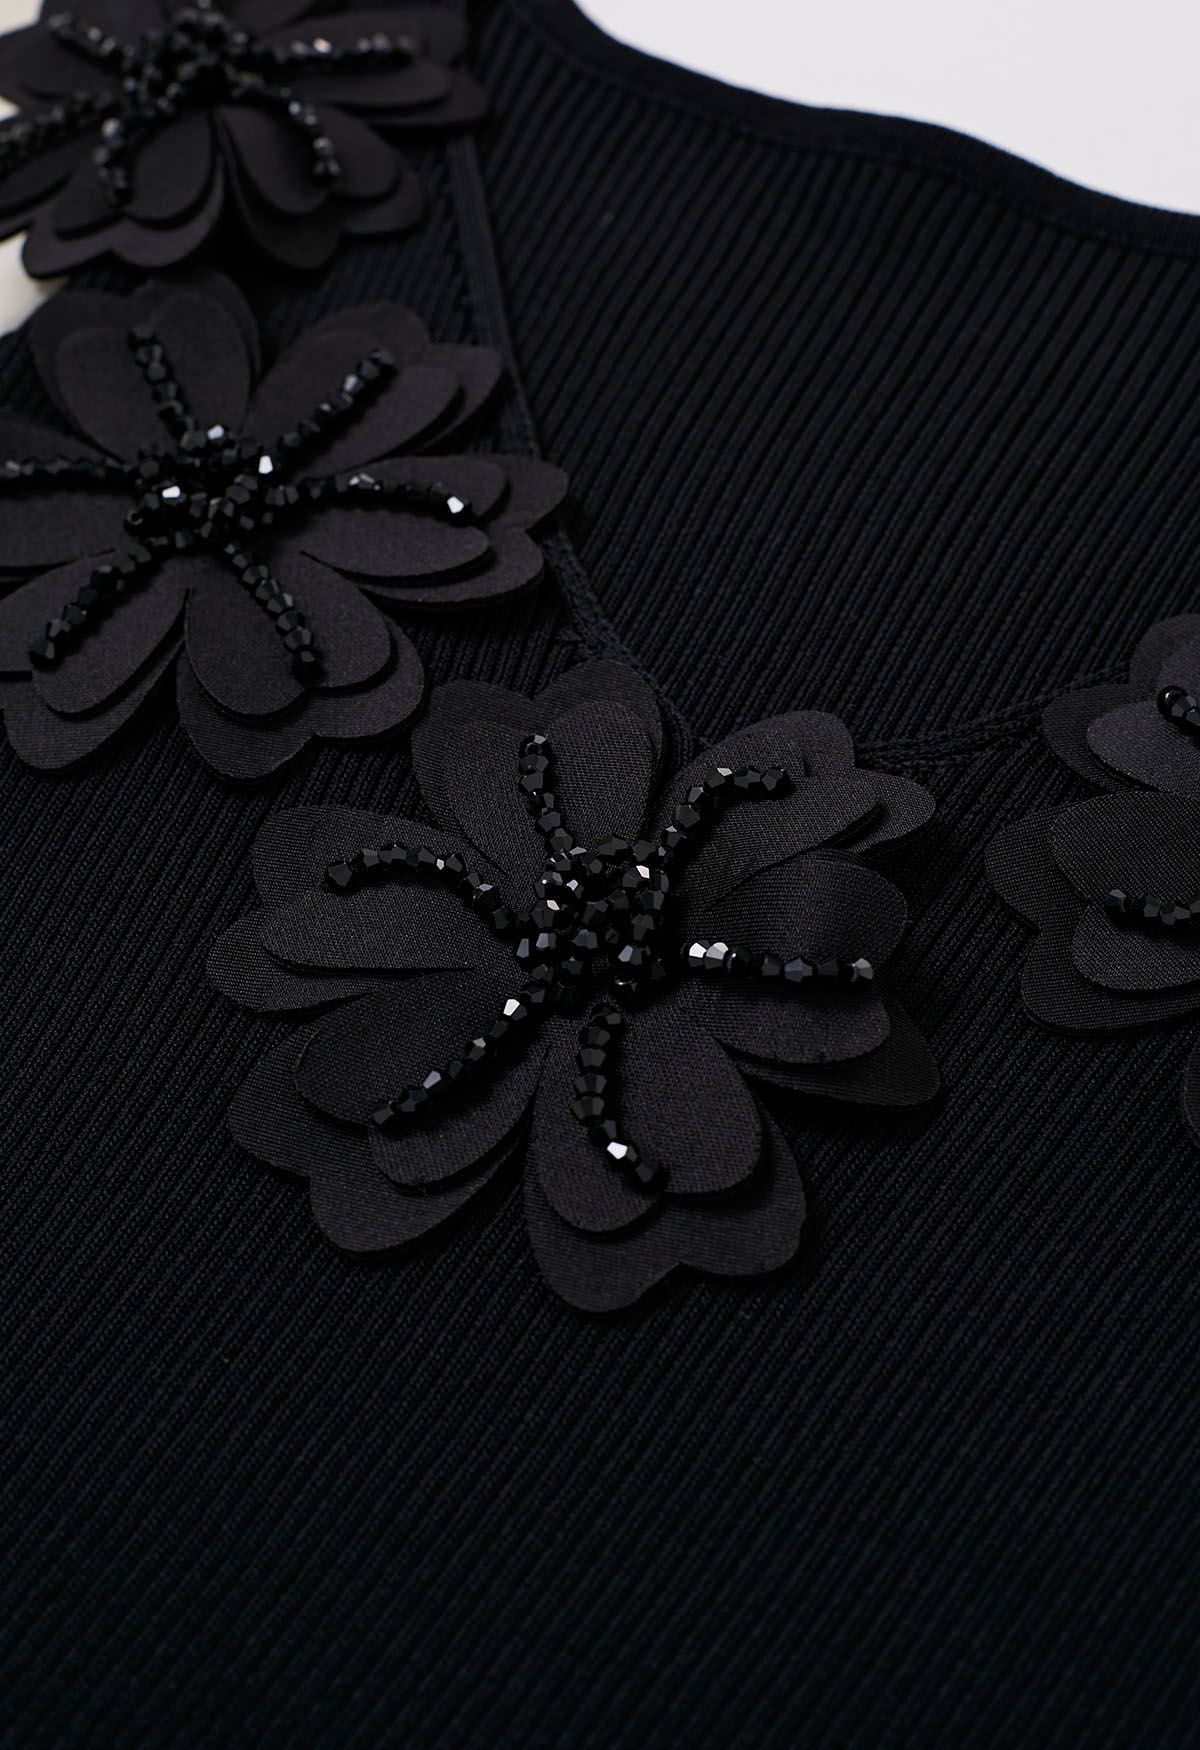 Gespleißtes Strickoberteil mit Perlen und Blumen, V-Ausschnitt und Blasenärmeln in Schwarz